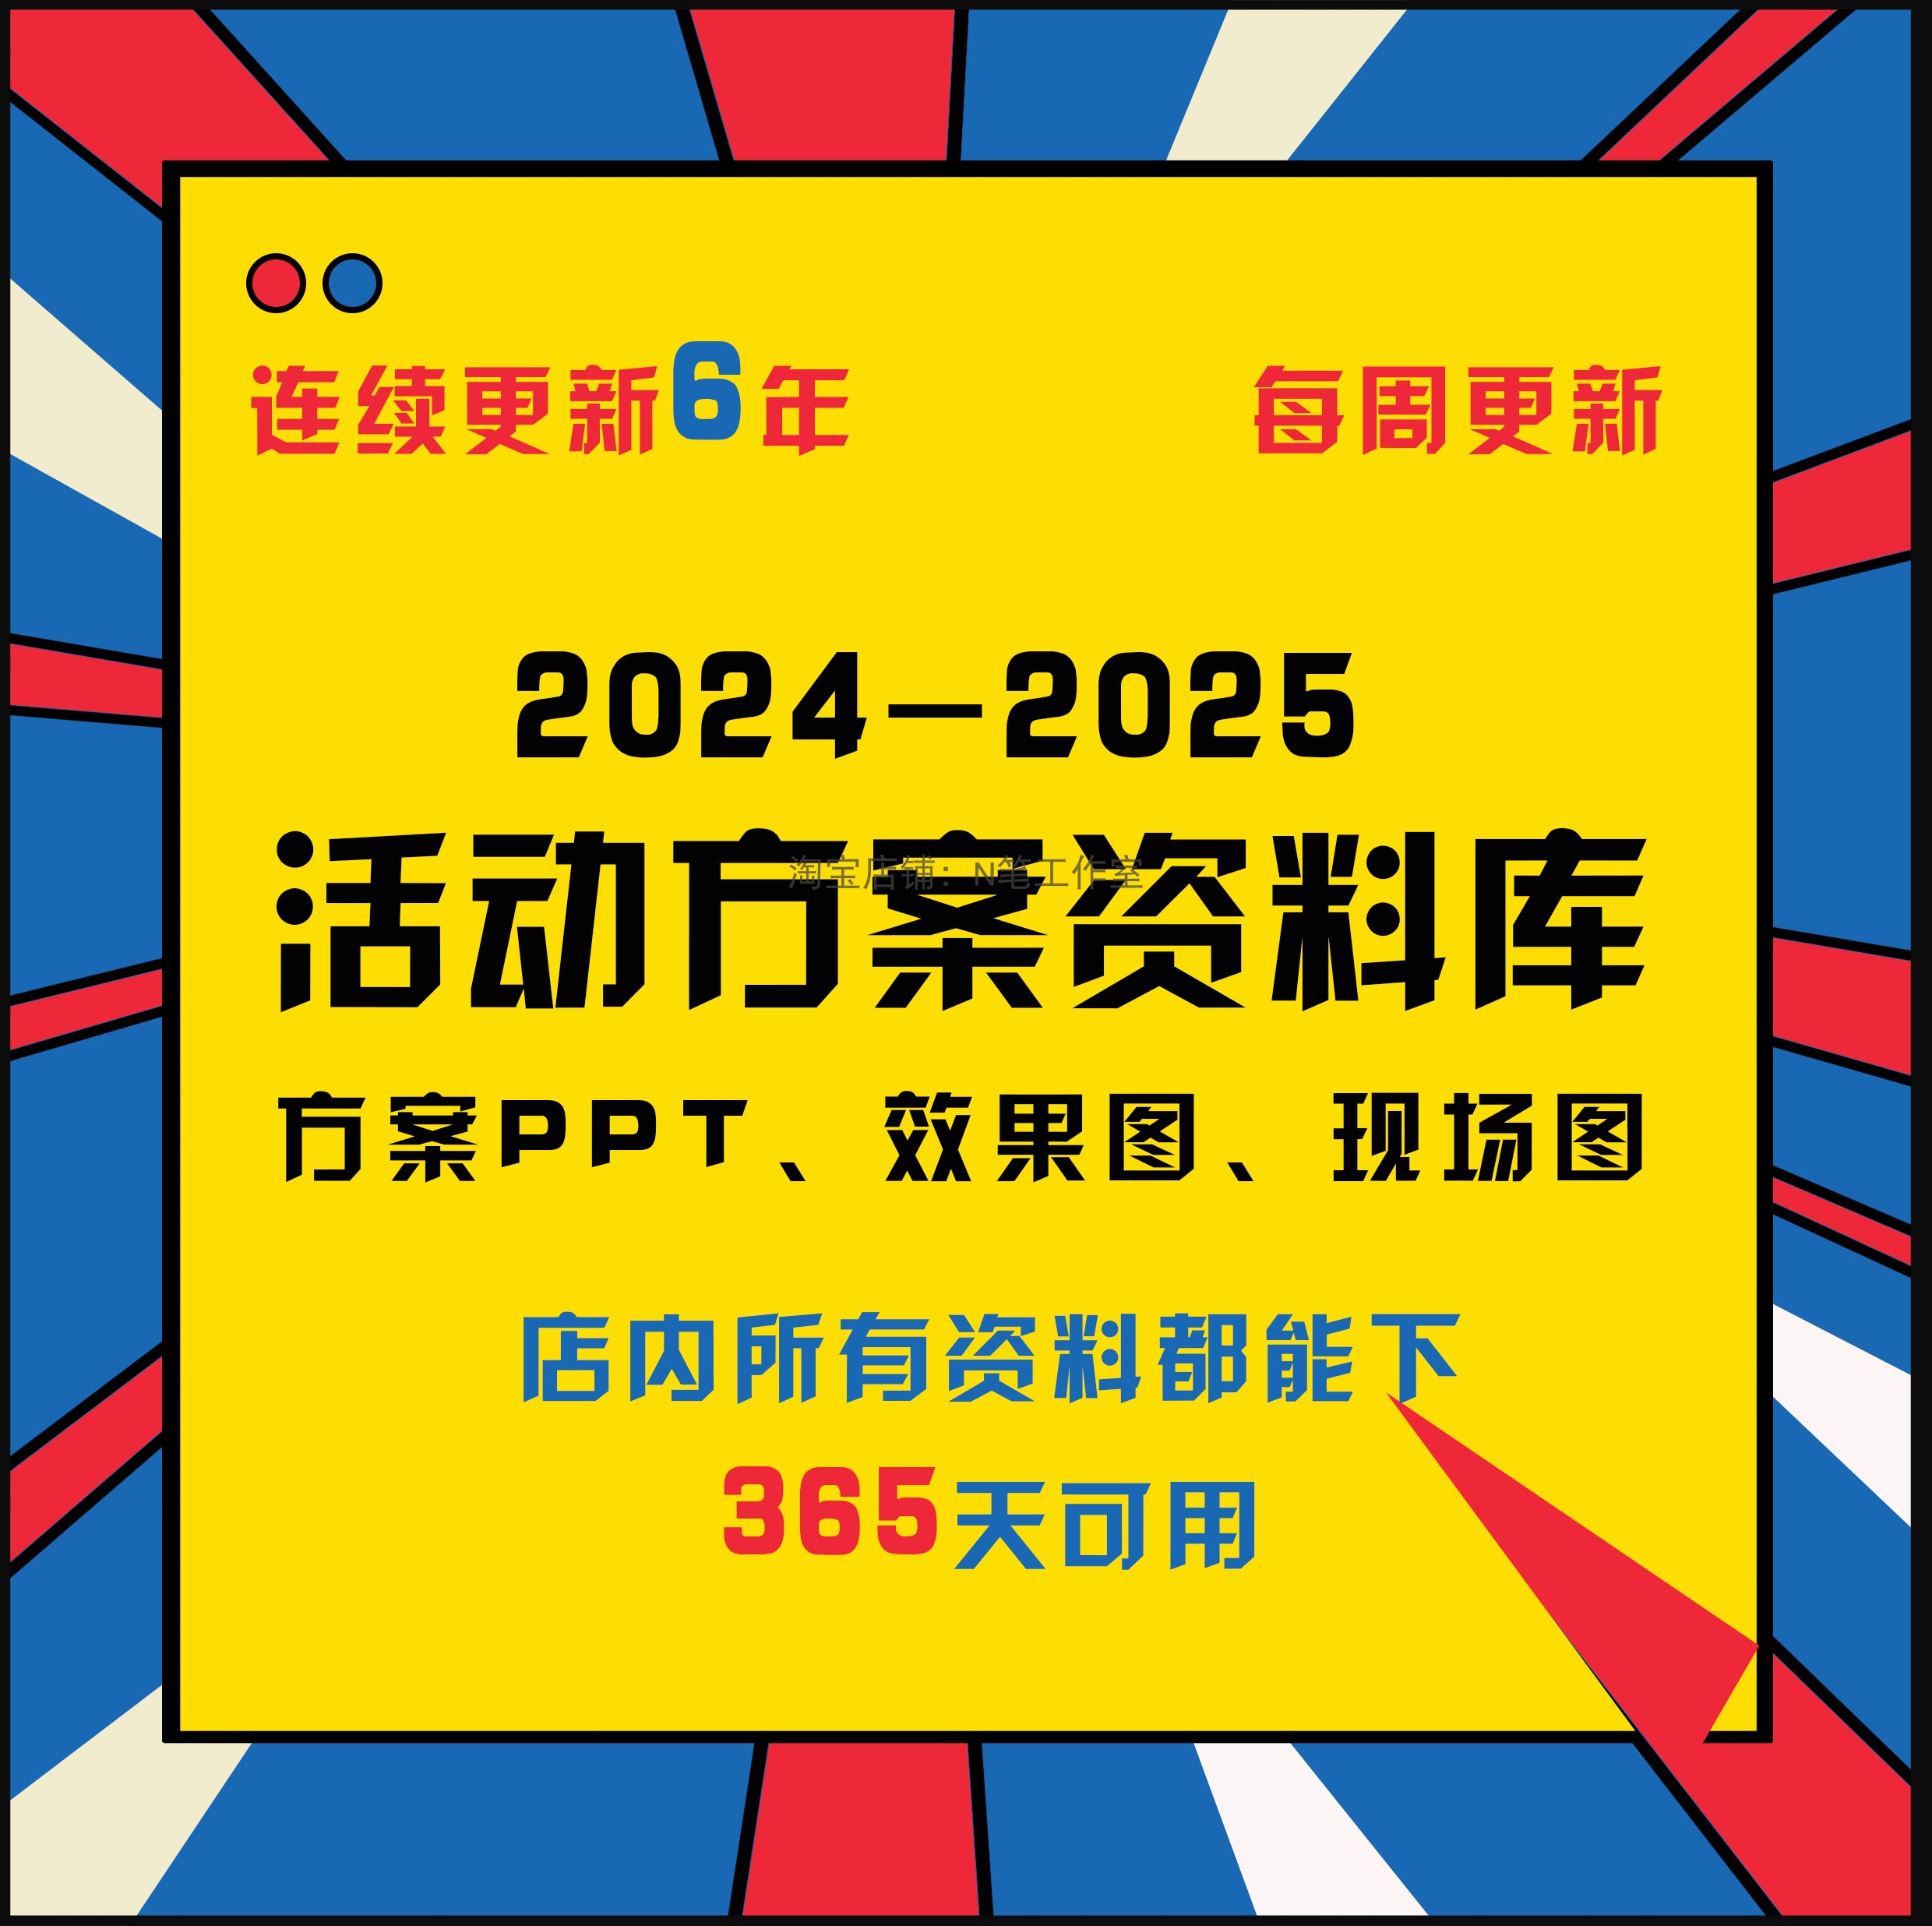 2024-2025年新广告公关活动策划传播方案ppt美陈布置现场图效果图